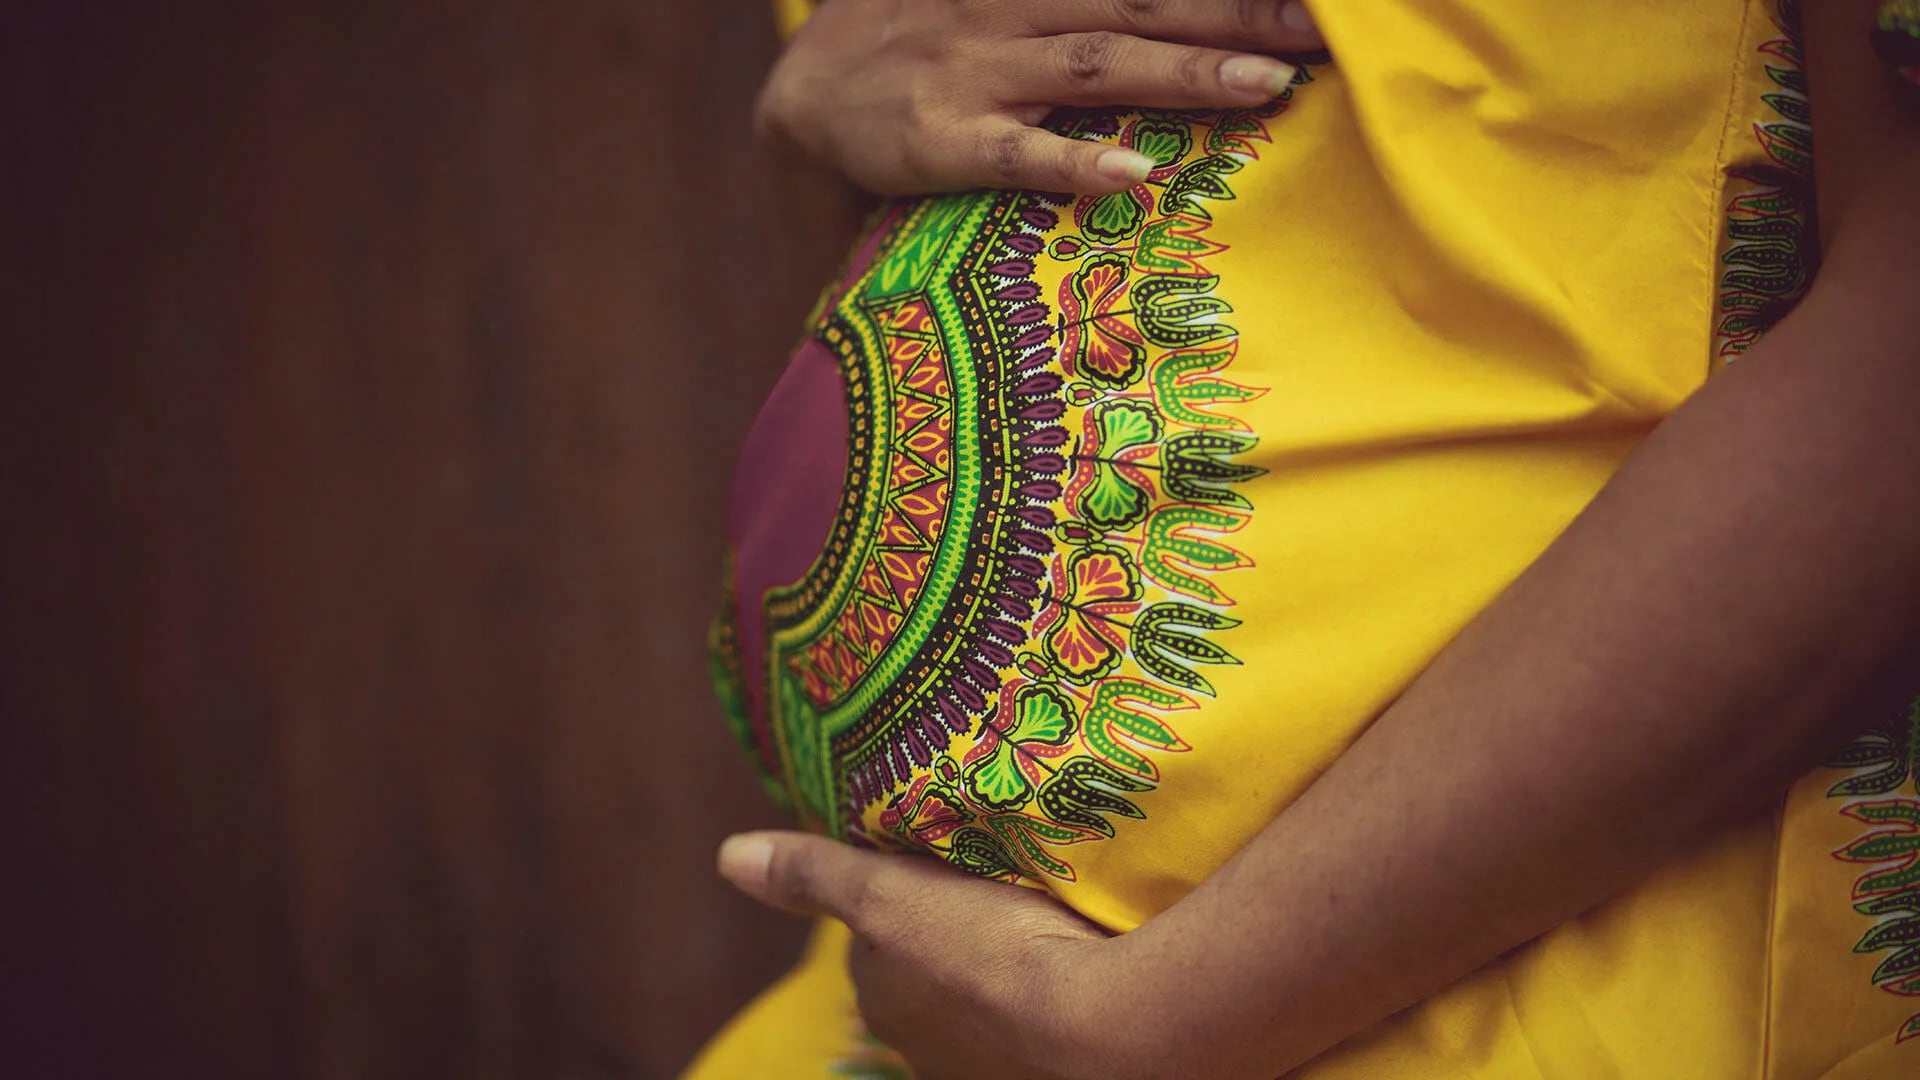 La mitad de los embarazos en el mundo son no planificados, según informe